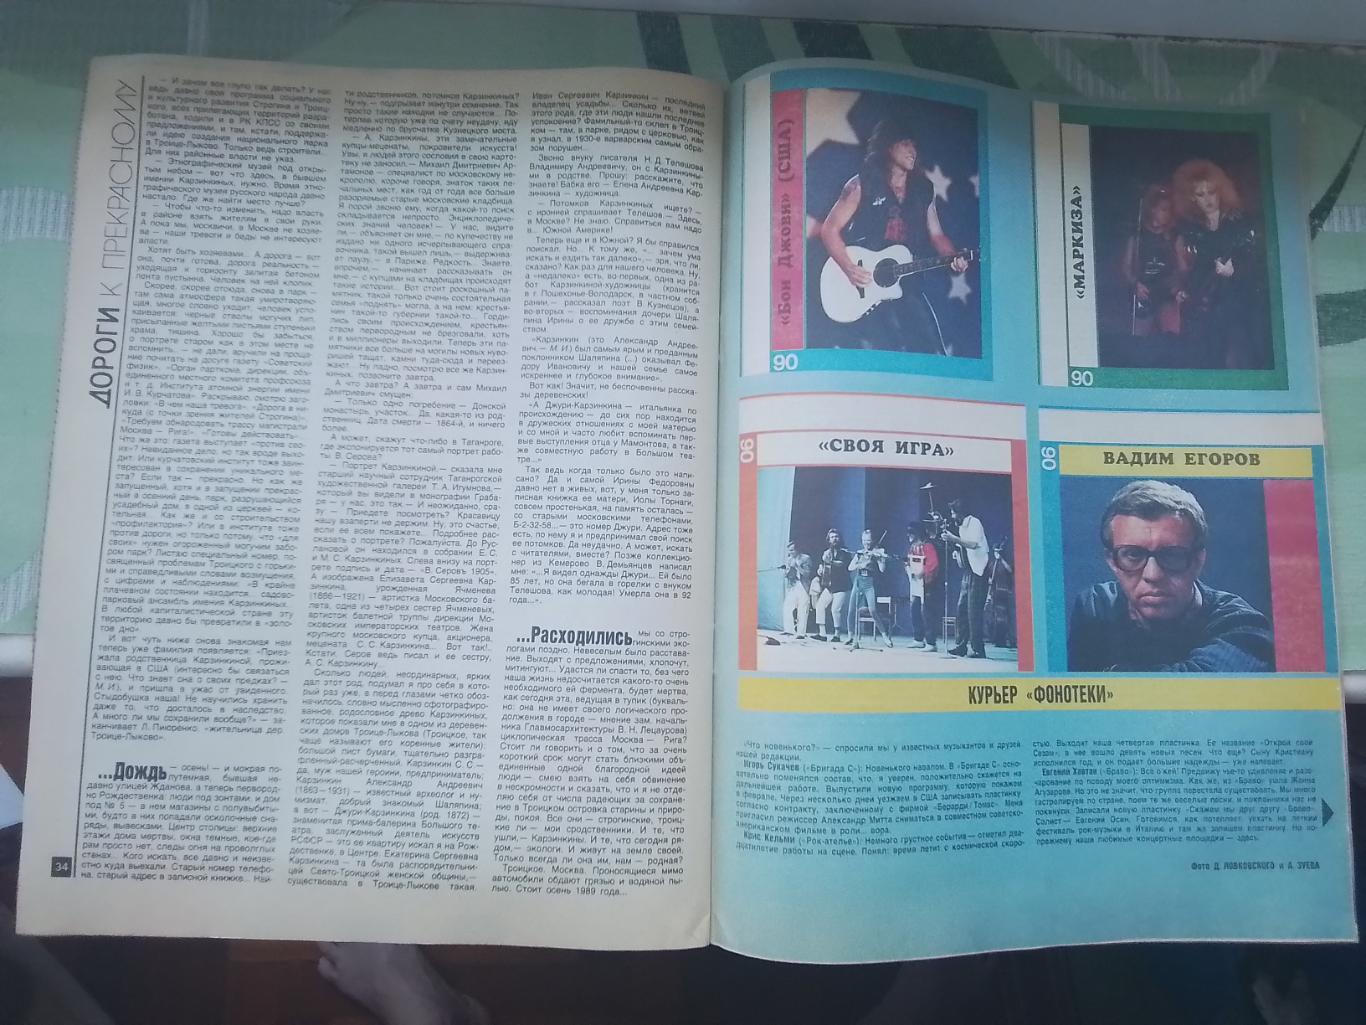 Журнал Работница № 7 1990 Женский монастырь Клара Новикова 5